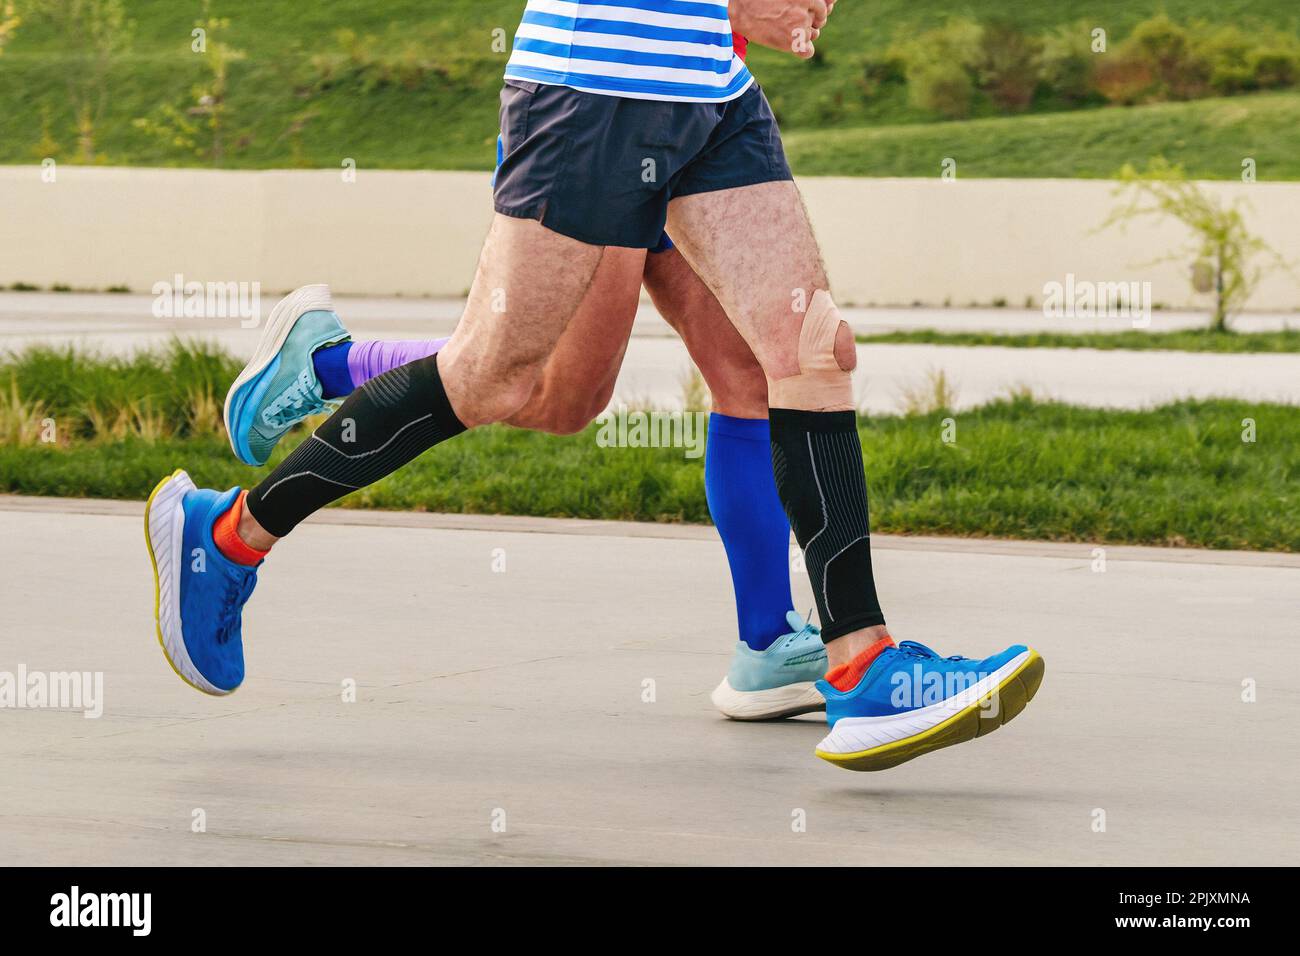 jambes deux coureurs masculins en chaussettes de compression et manches courent à distance marathon, compétition de sports d'endurance Banque D'Images